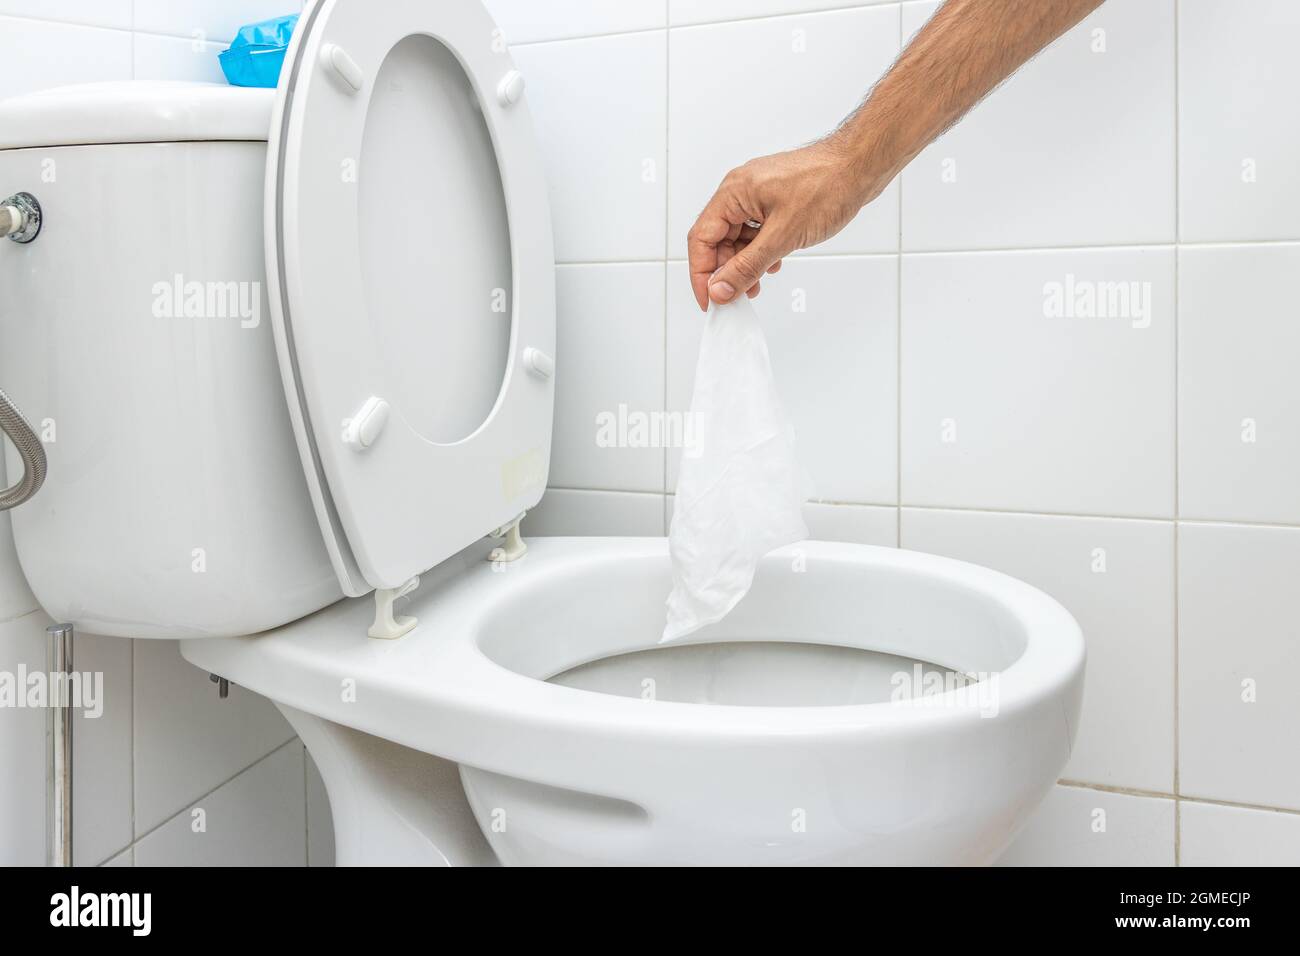 La main jette un chiffon humide dans les toilettes Photo Stock - Alamy